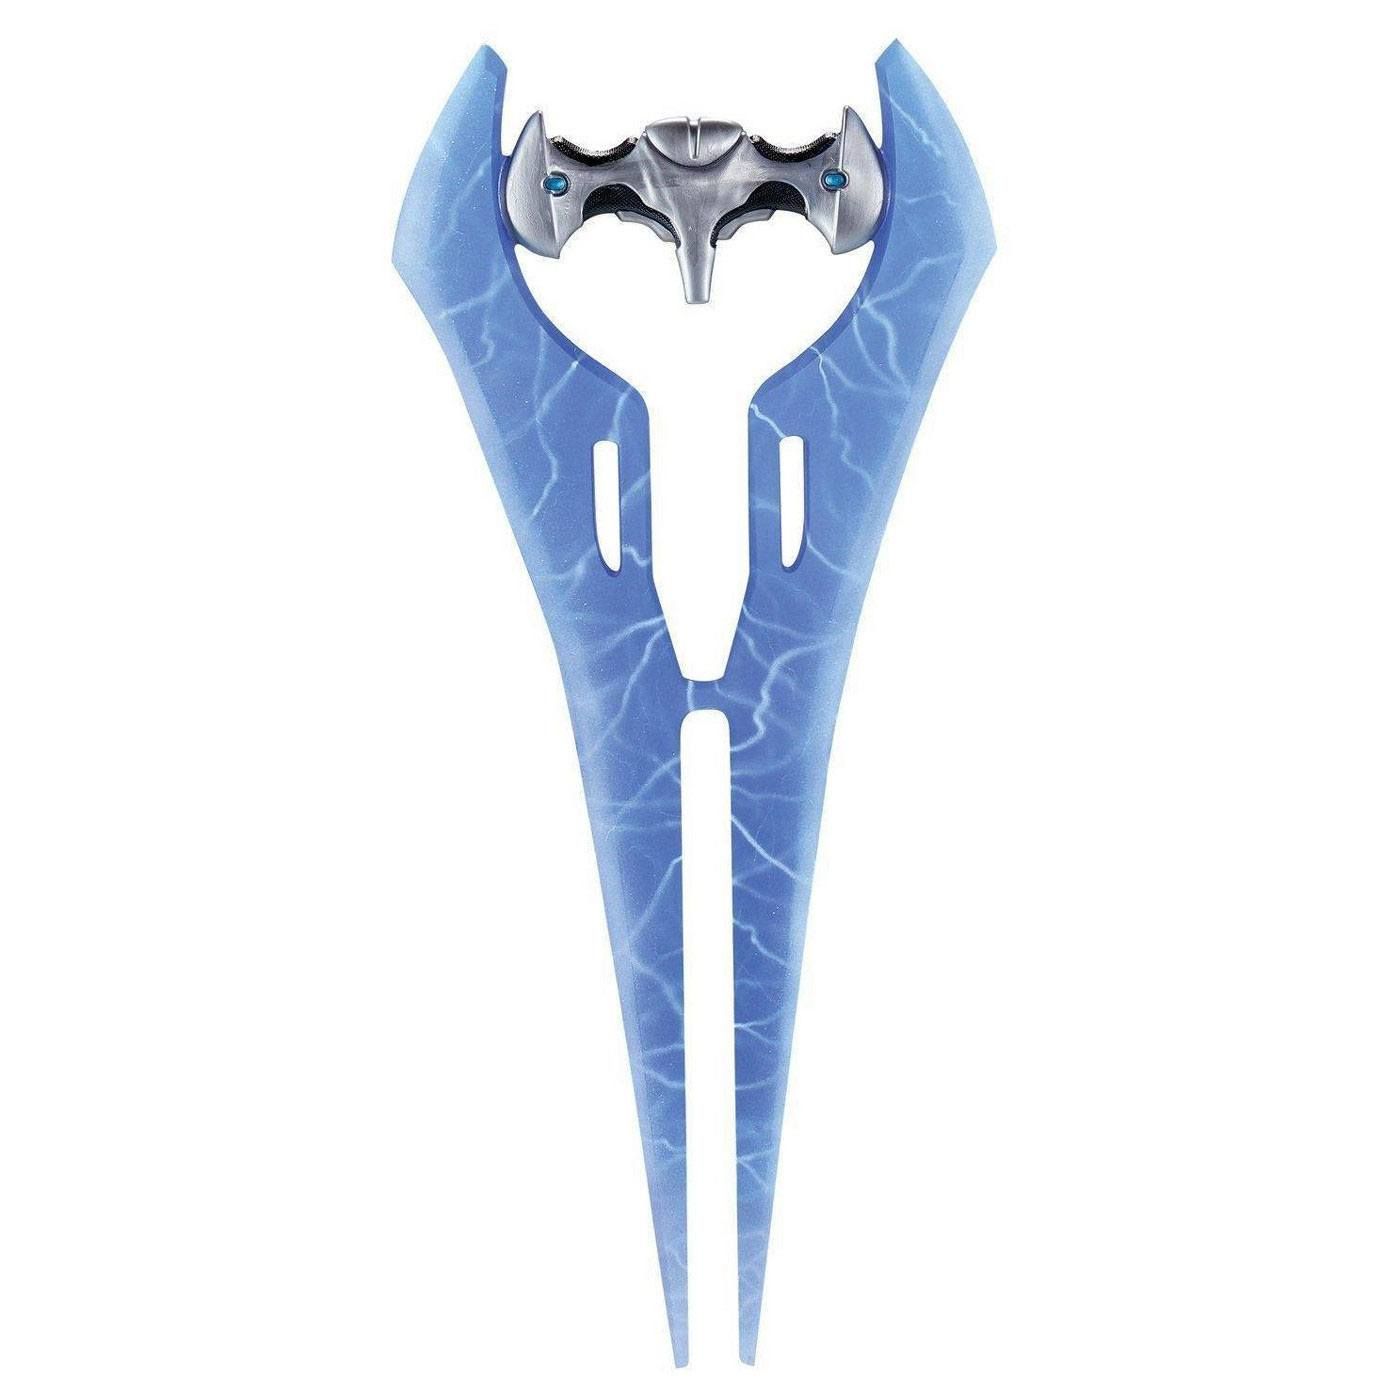 Halo Cosplay Replika Energy Sword 64 cm Disguise